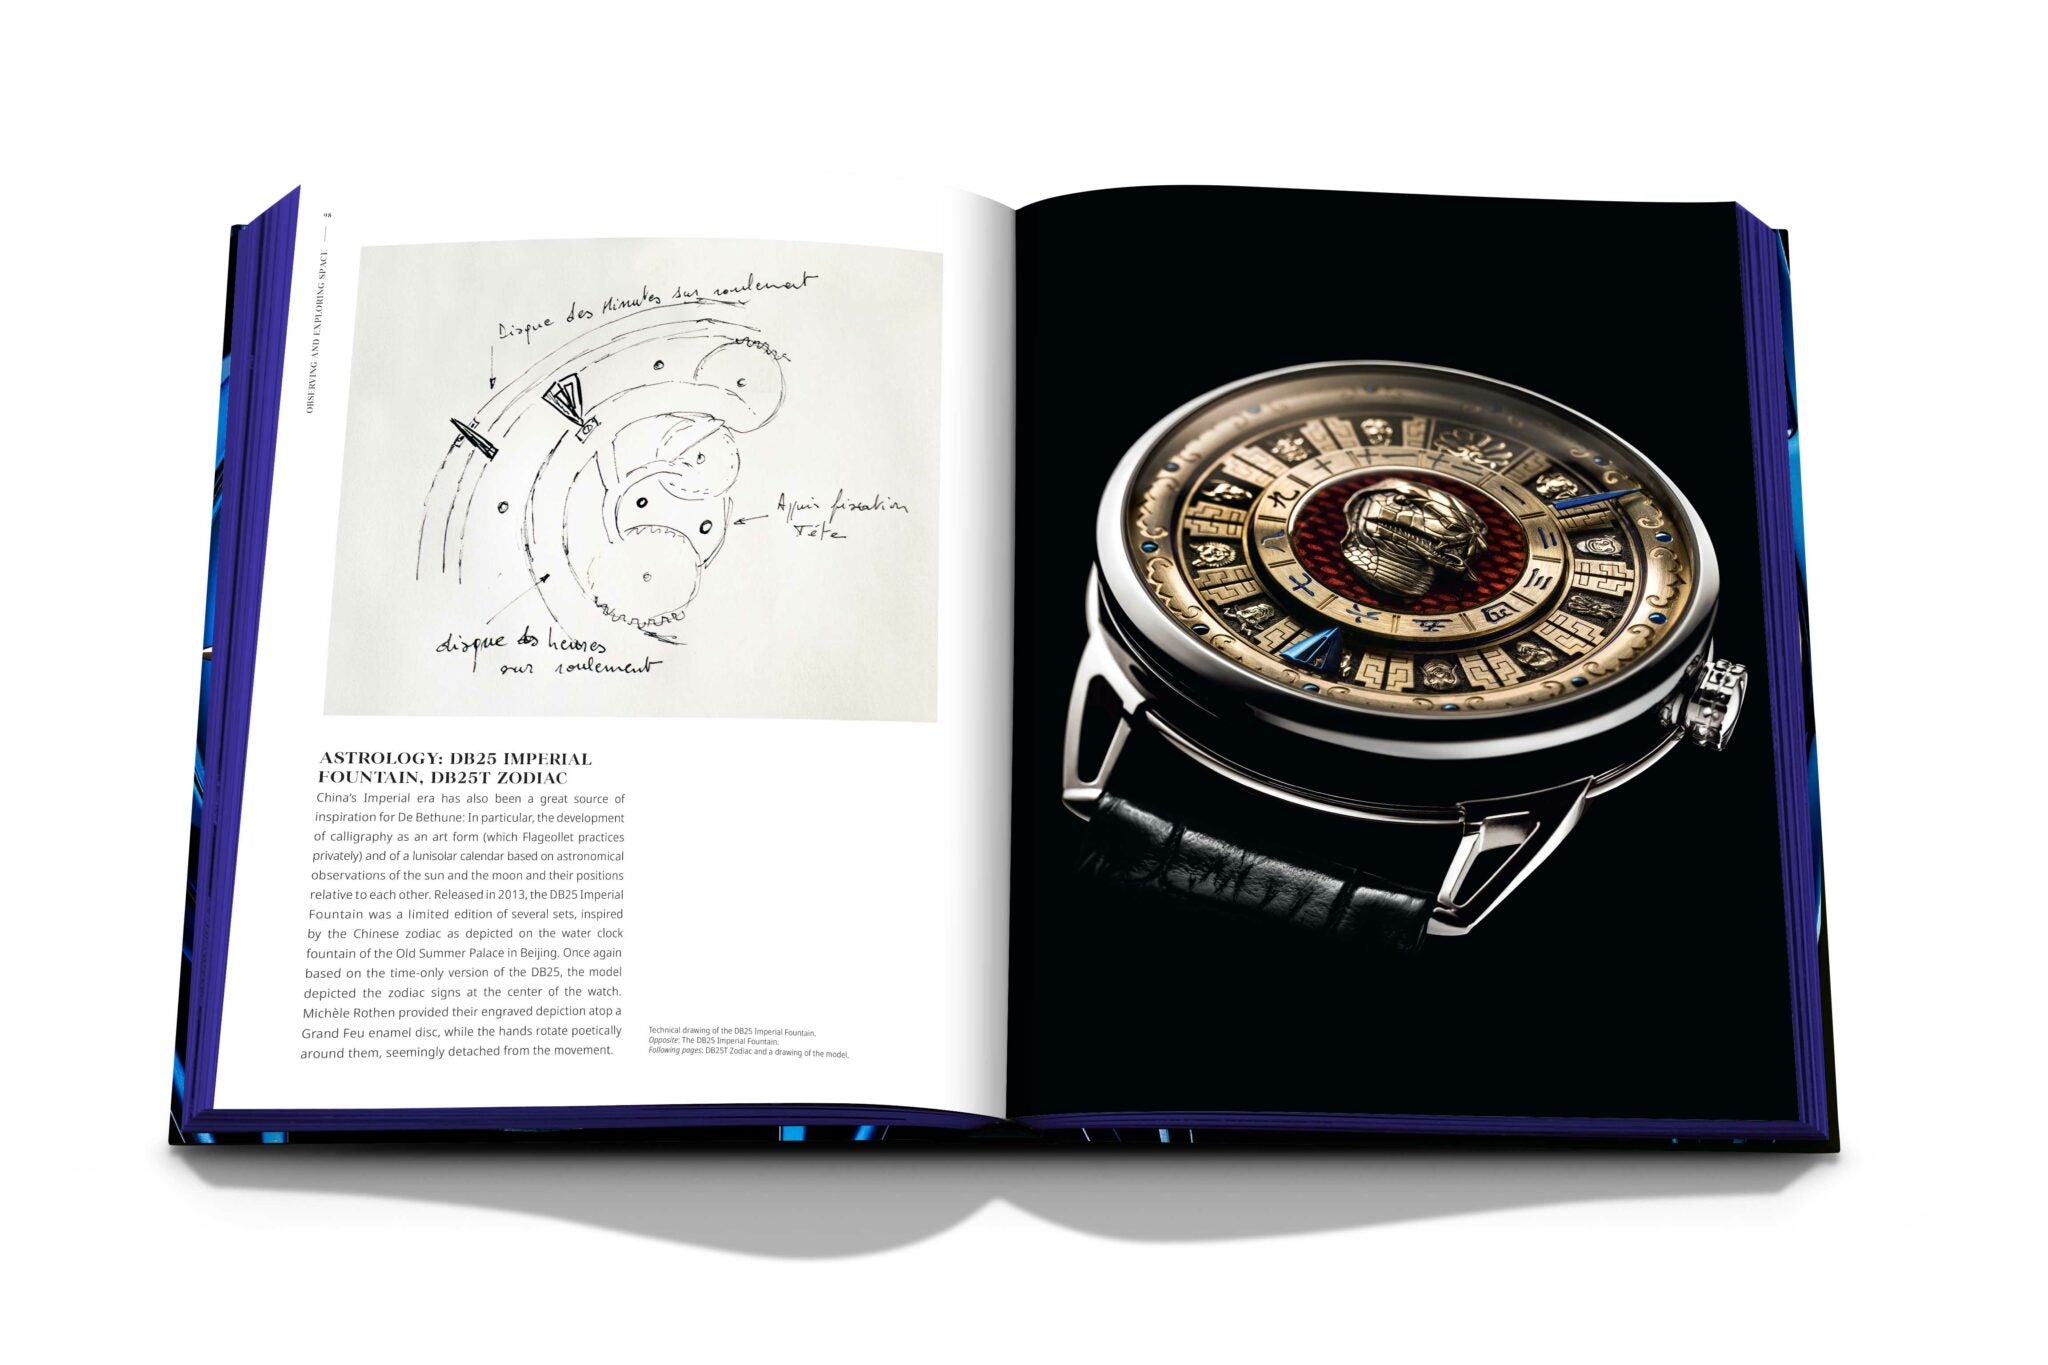 Assouline De Bethune: Die Kunst der Uhrmacherei